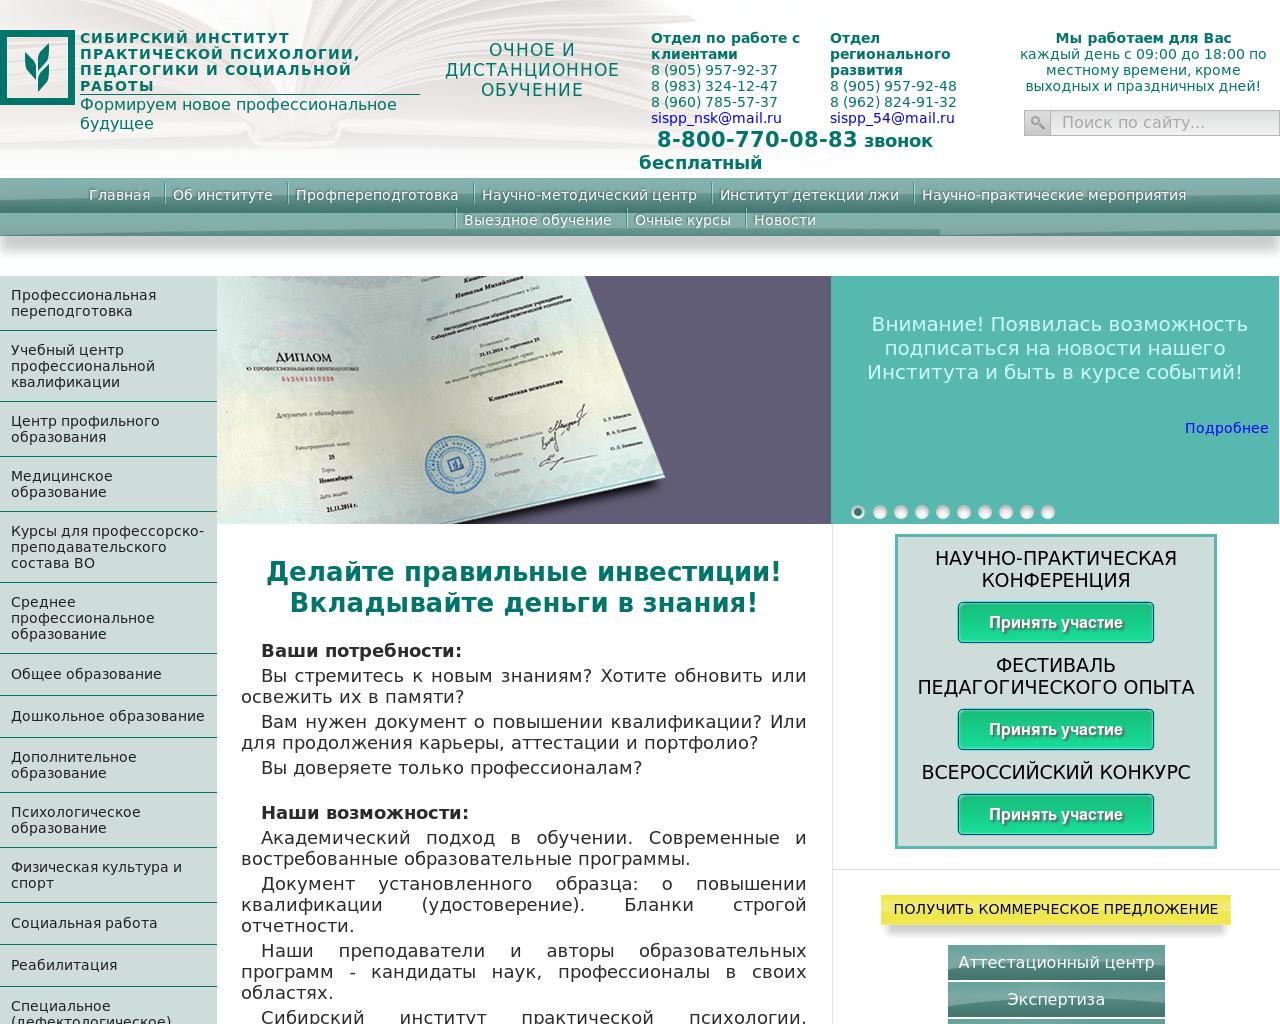 Изображение сайта sispp.ru в разрешении 1280x1024